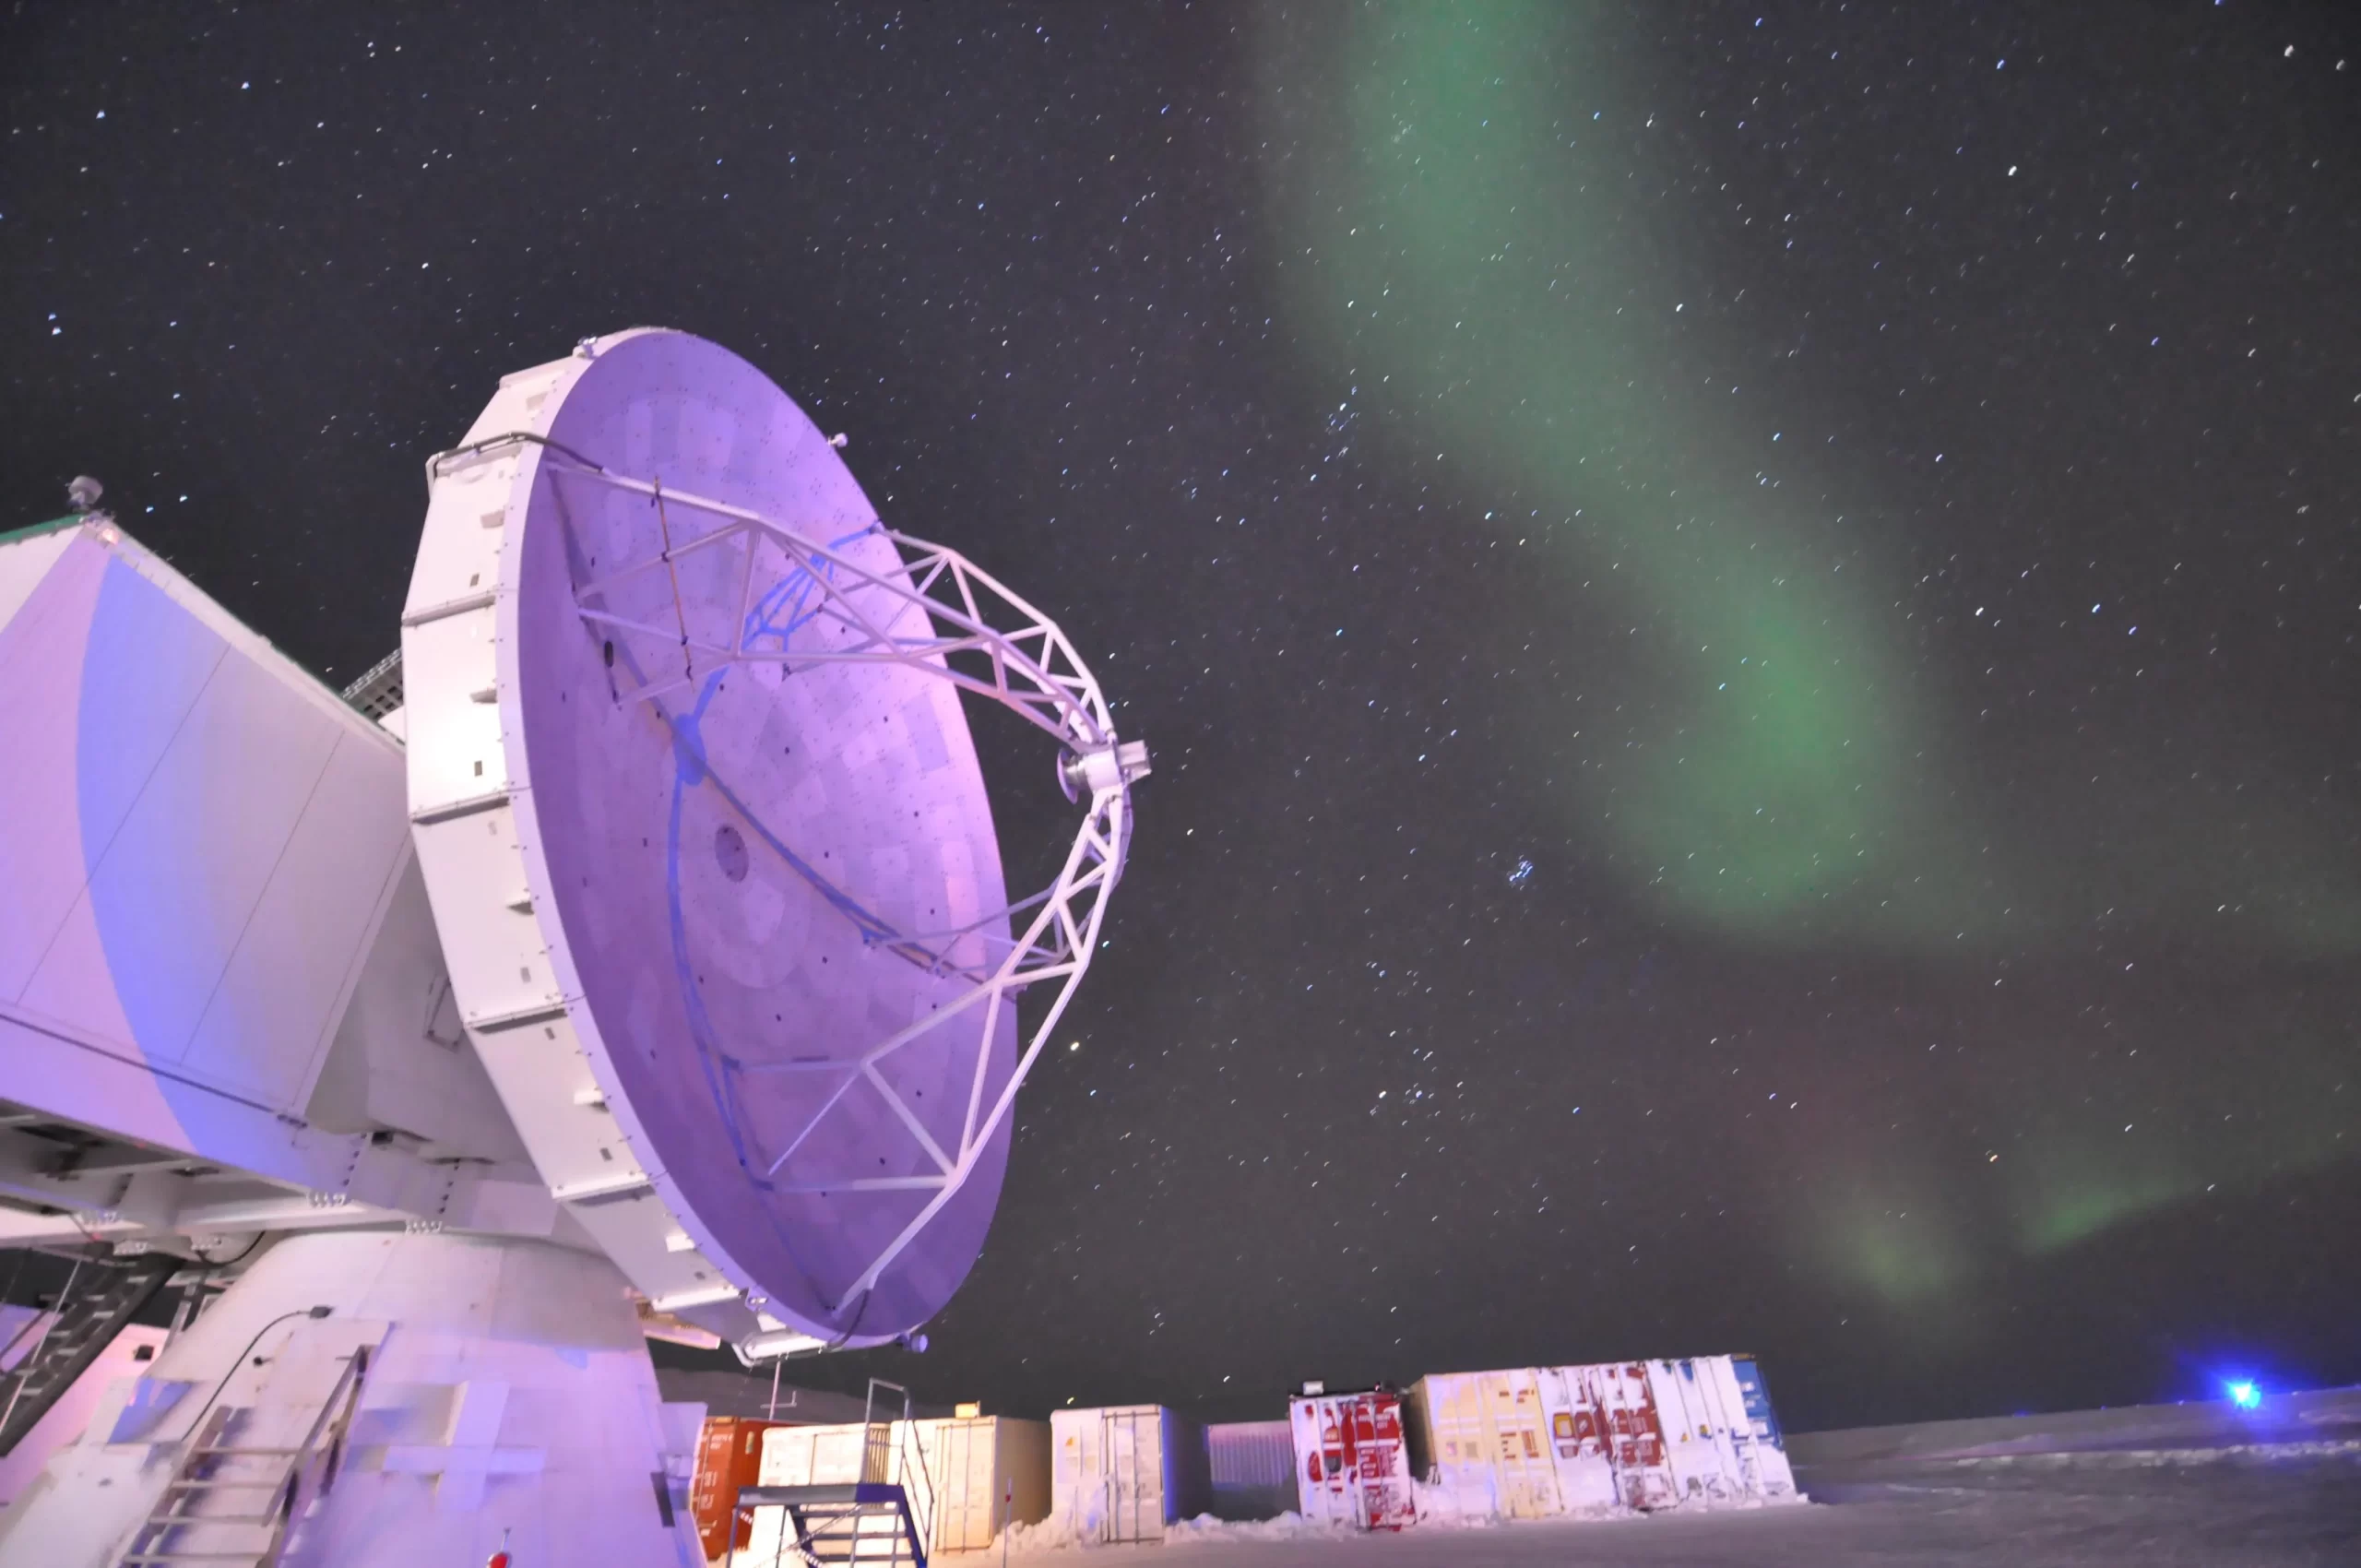 格陵兰望远镜（GLT）与极光。图片来源：松下聪树/中研院天文所。